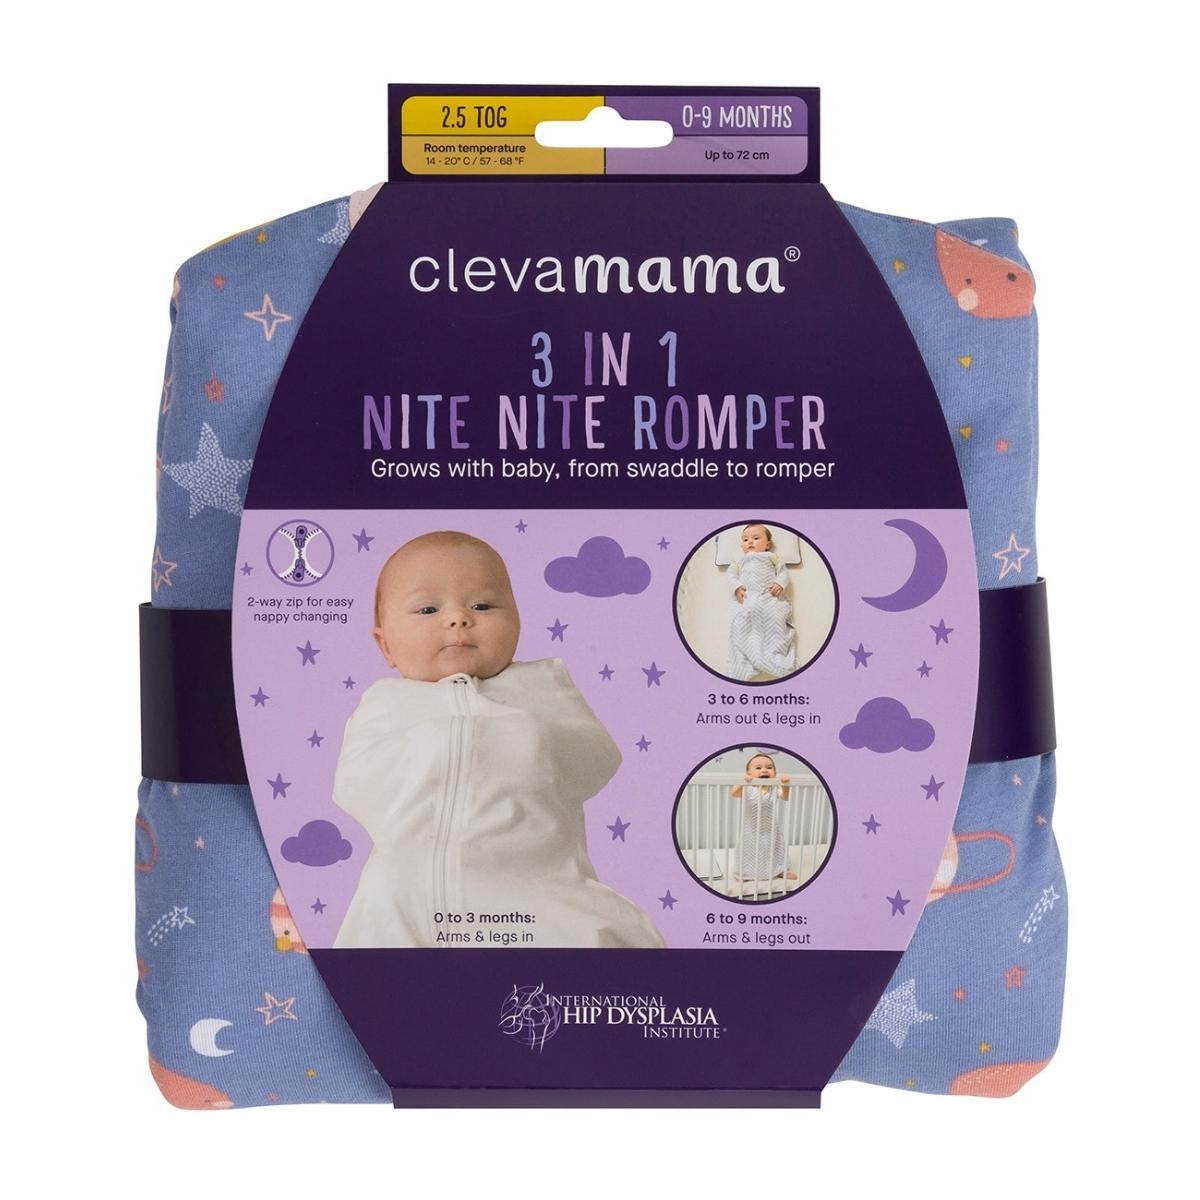 Clevamama 3 in 1 Nite Nite Romper & Sleeping Bag (2.5 Tog) Pink